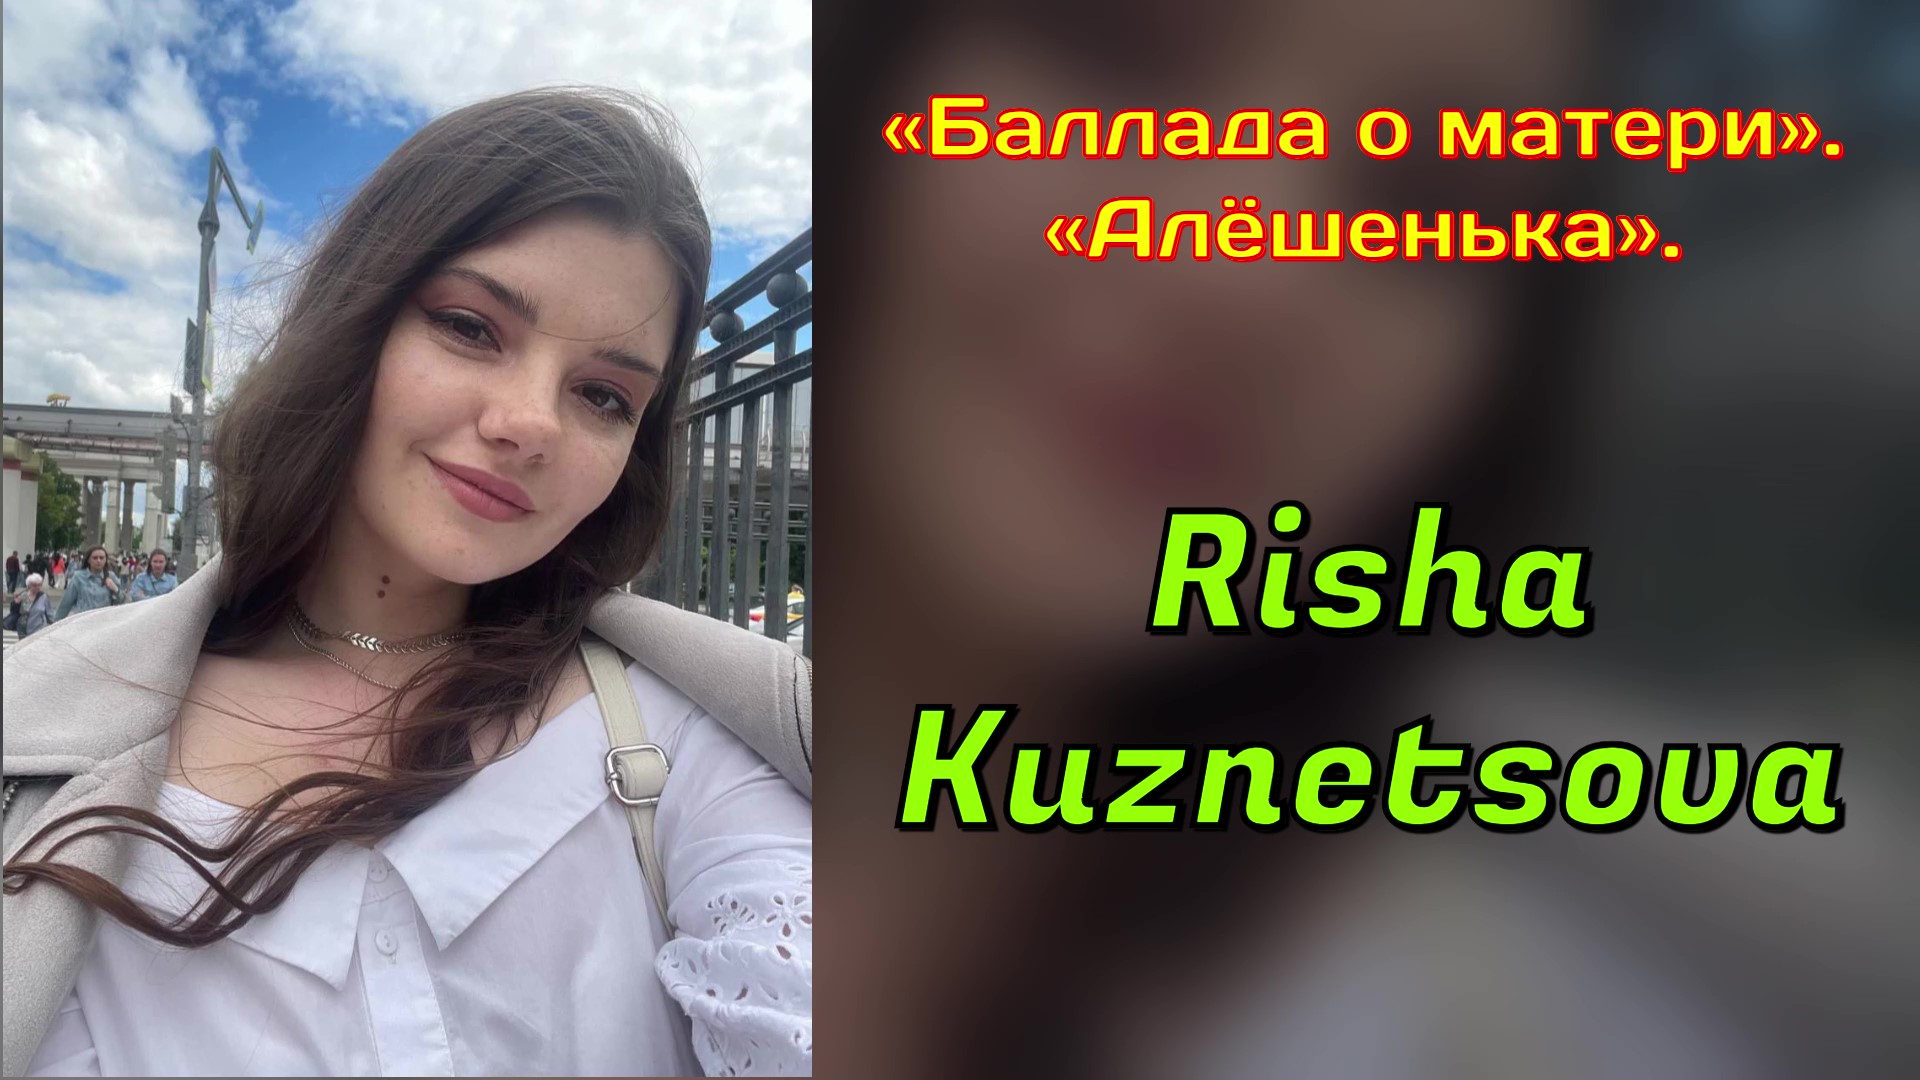 Risha Kuznetsova — «Баллада о матери». («Алёшенька»). Евгений Мартынов, Андрей Дементьев.